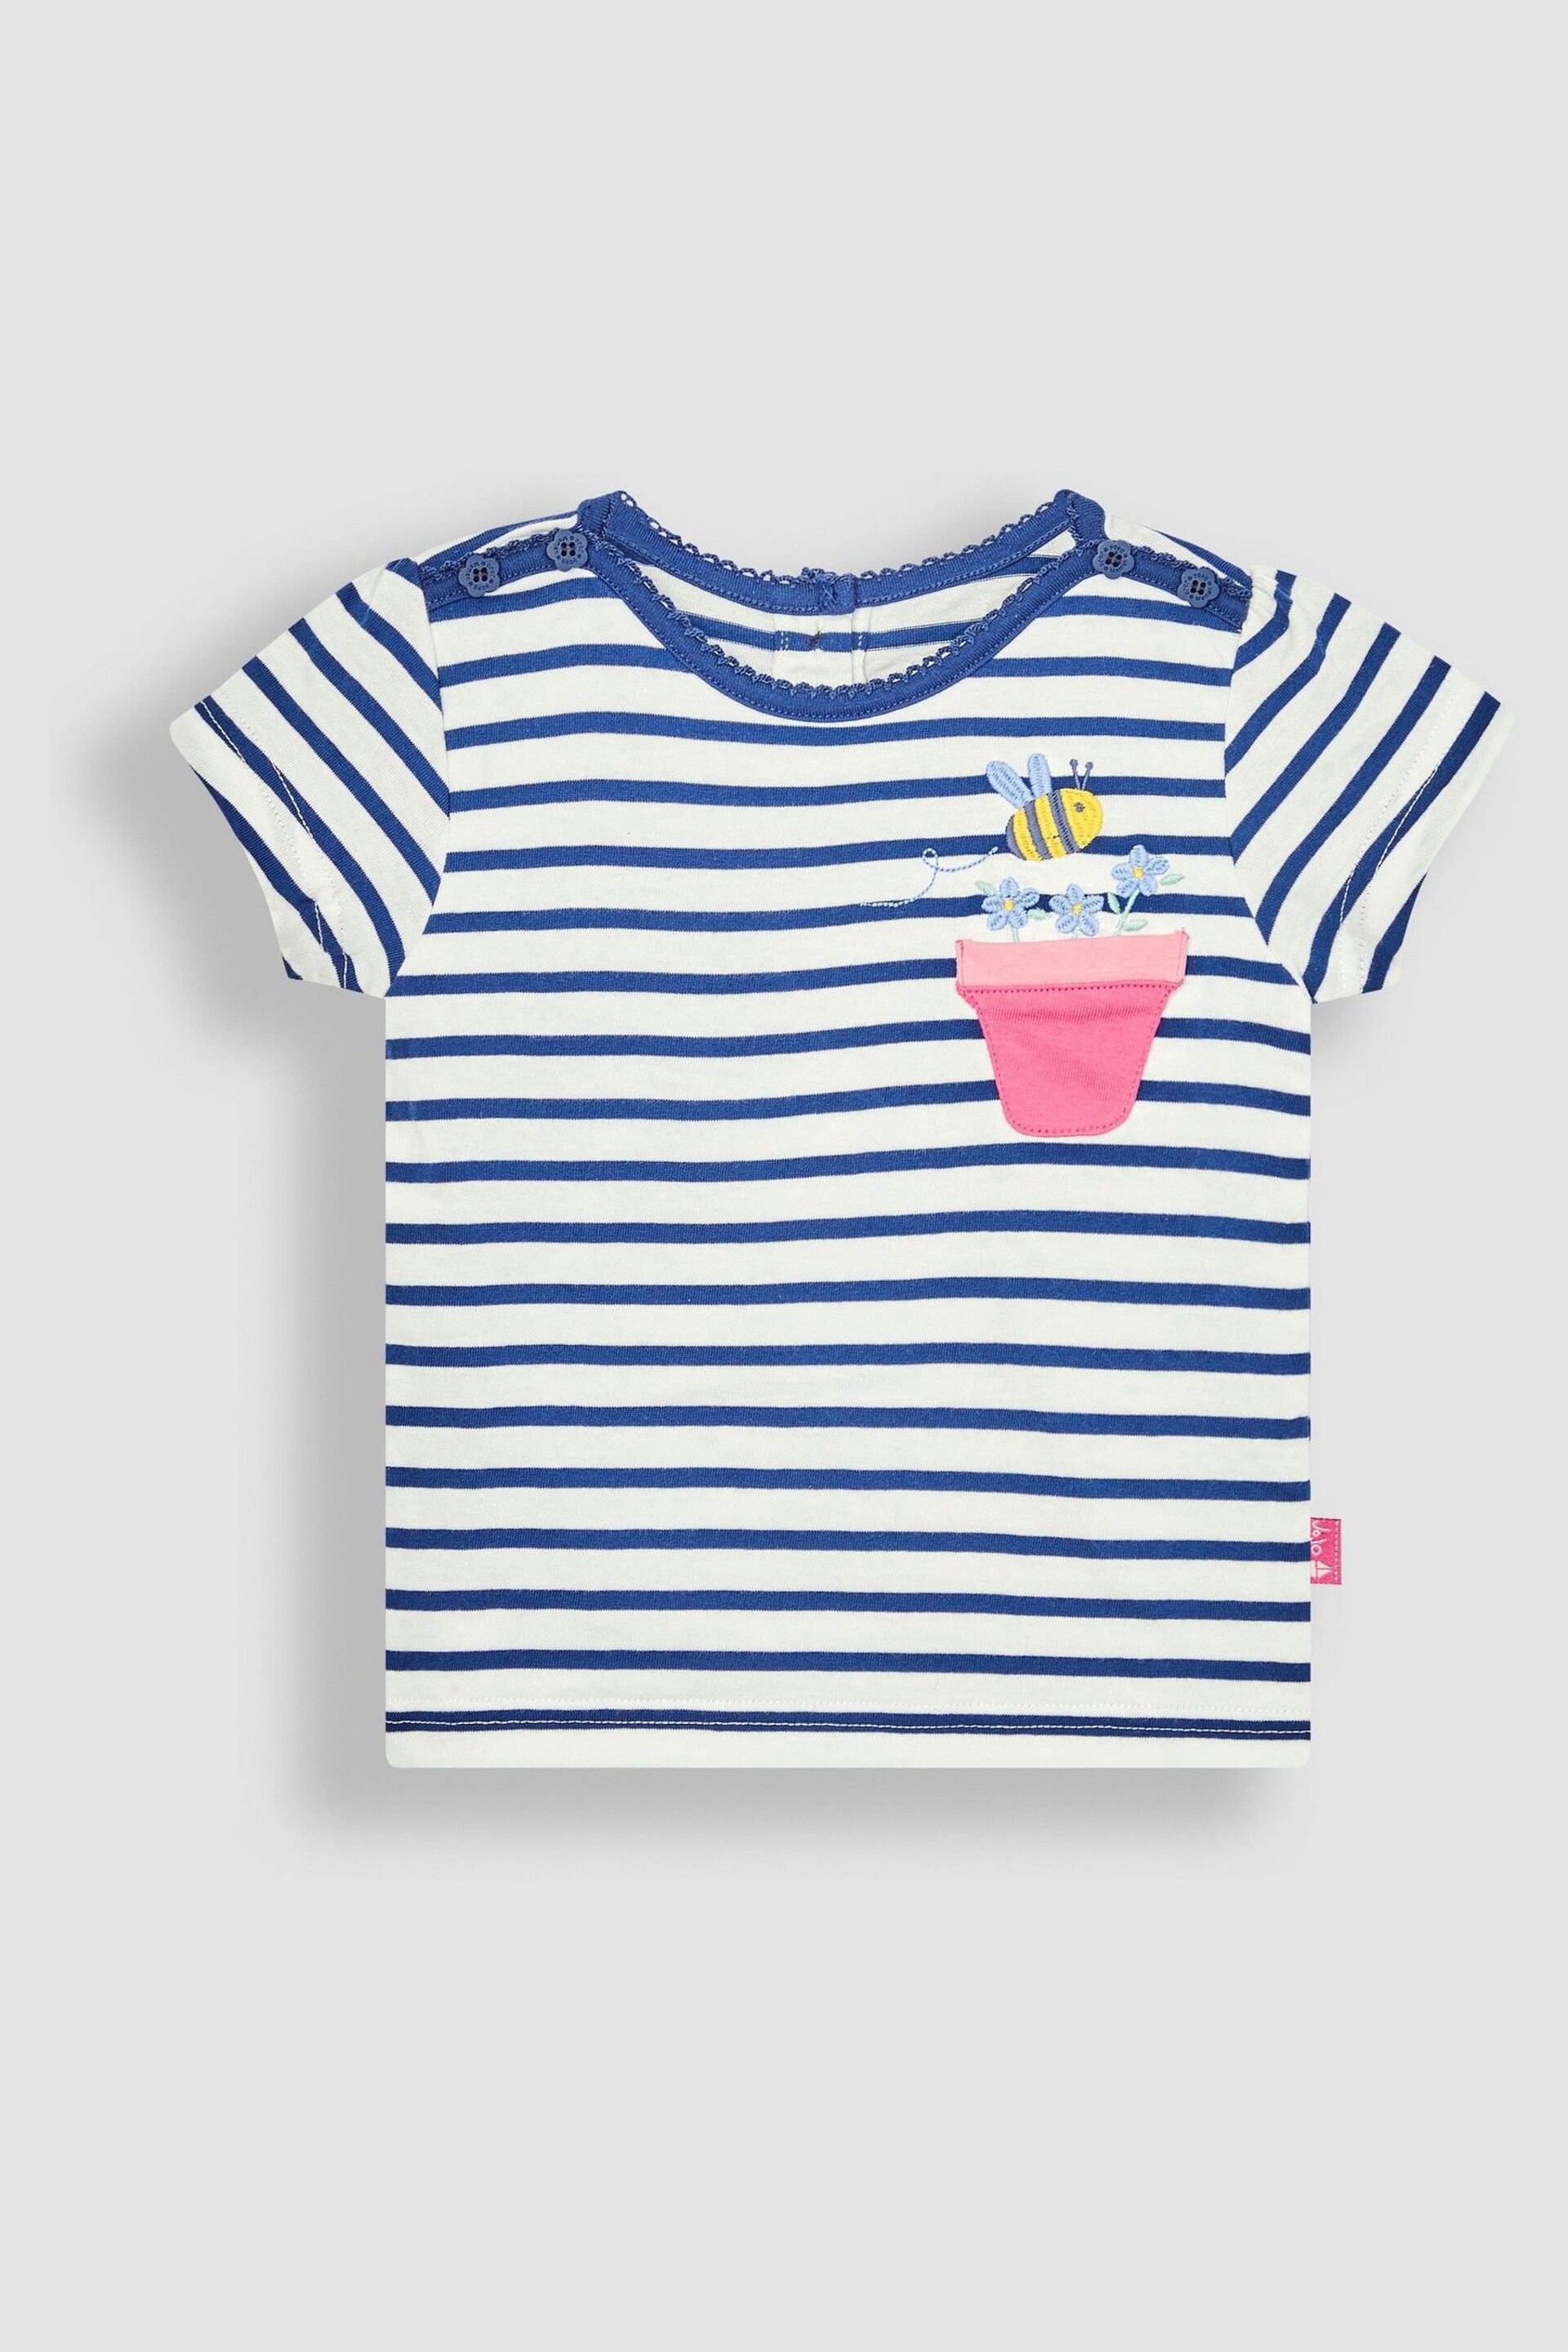 JoJo Maman Bébé Ecru Navy Stripe Bee Appliqué Pocket T-Shirt - Image 3 of 5